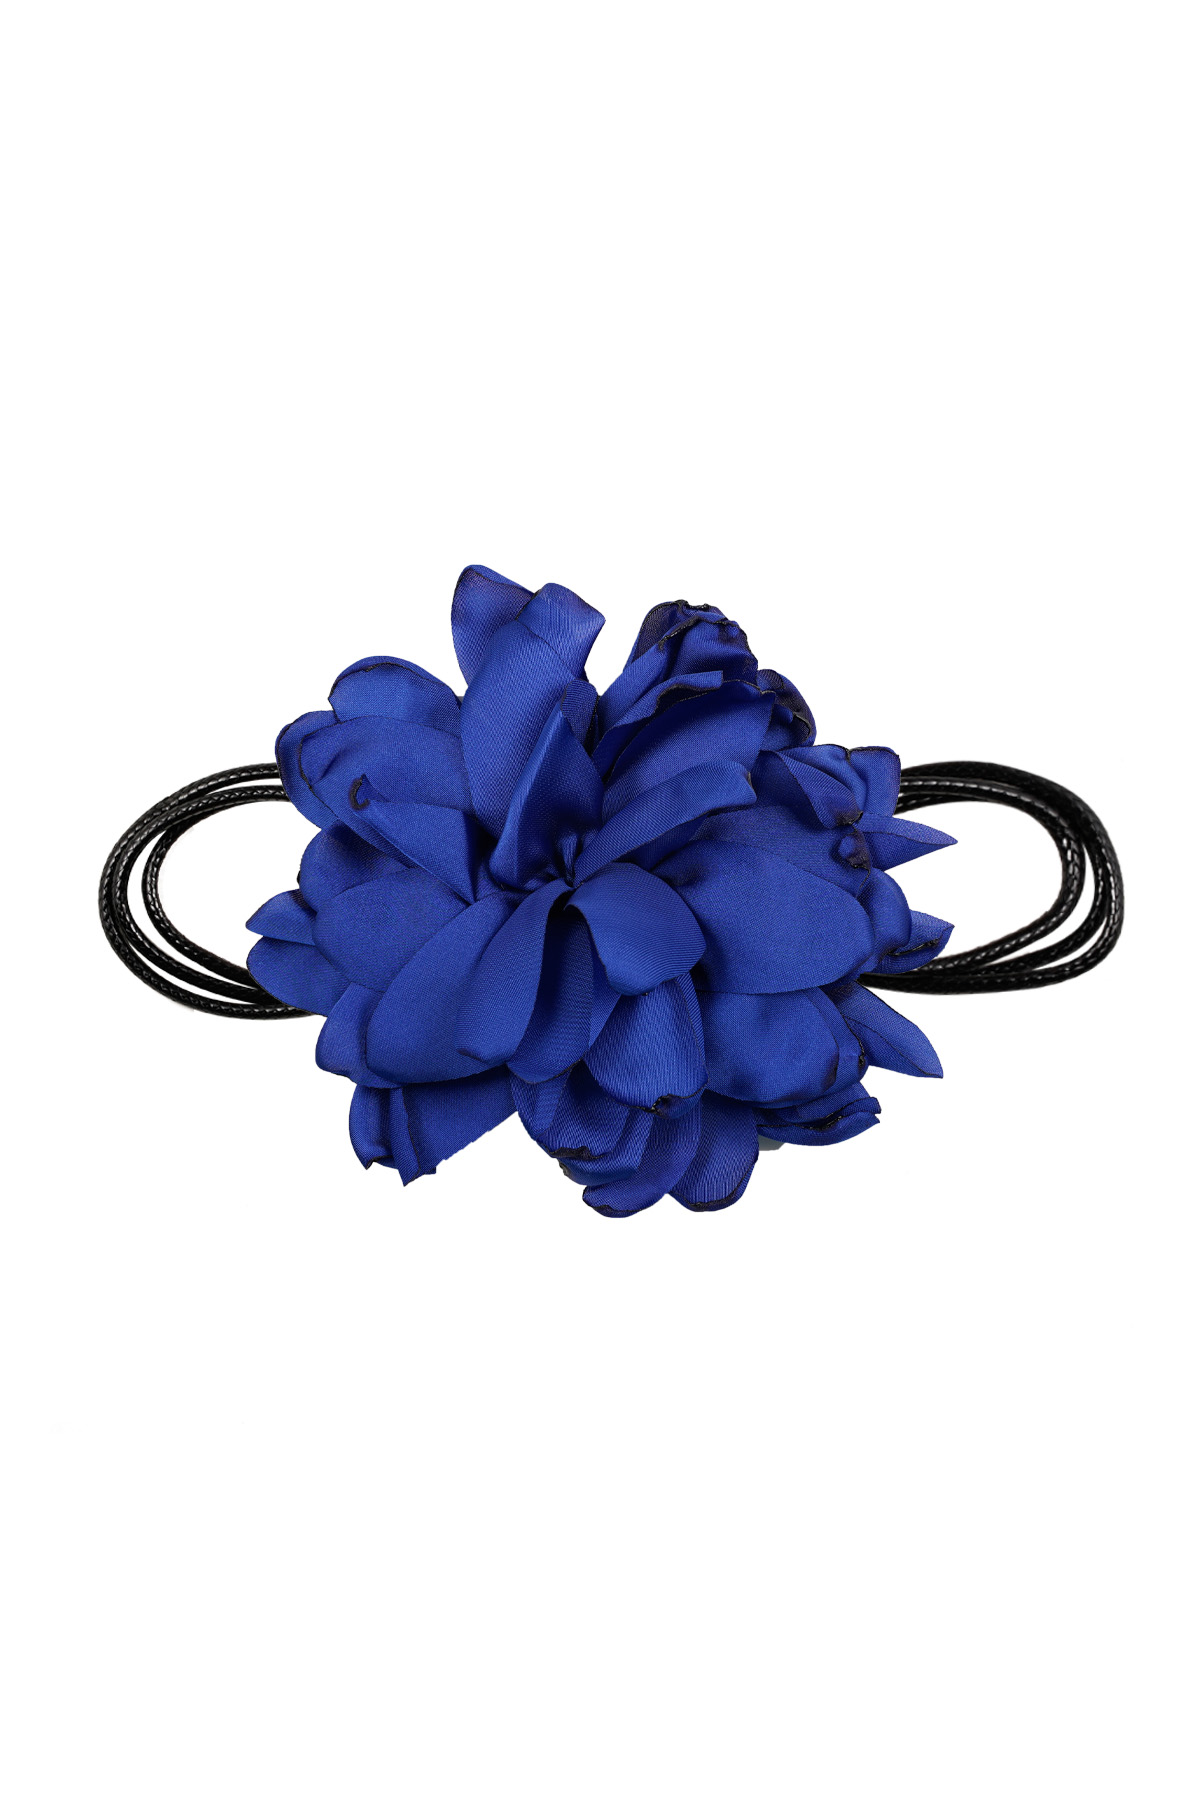 Collar flor grande - azul h5 